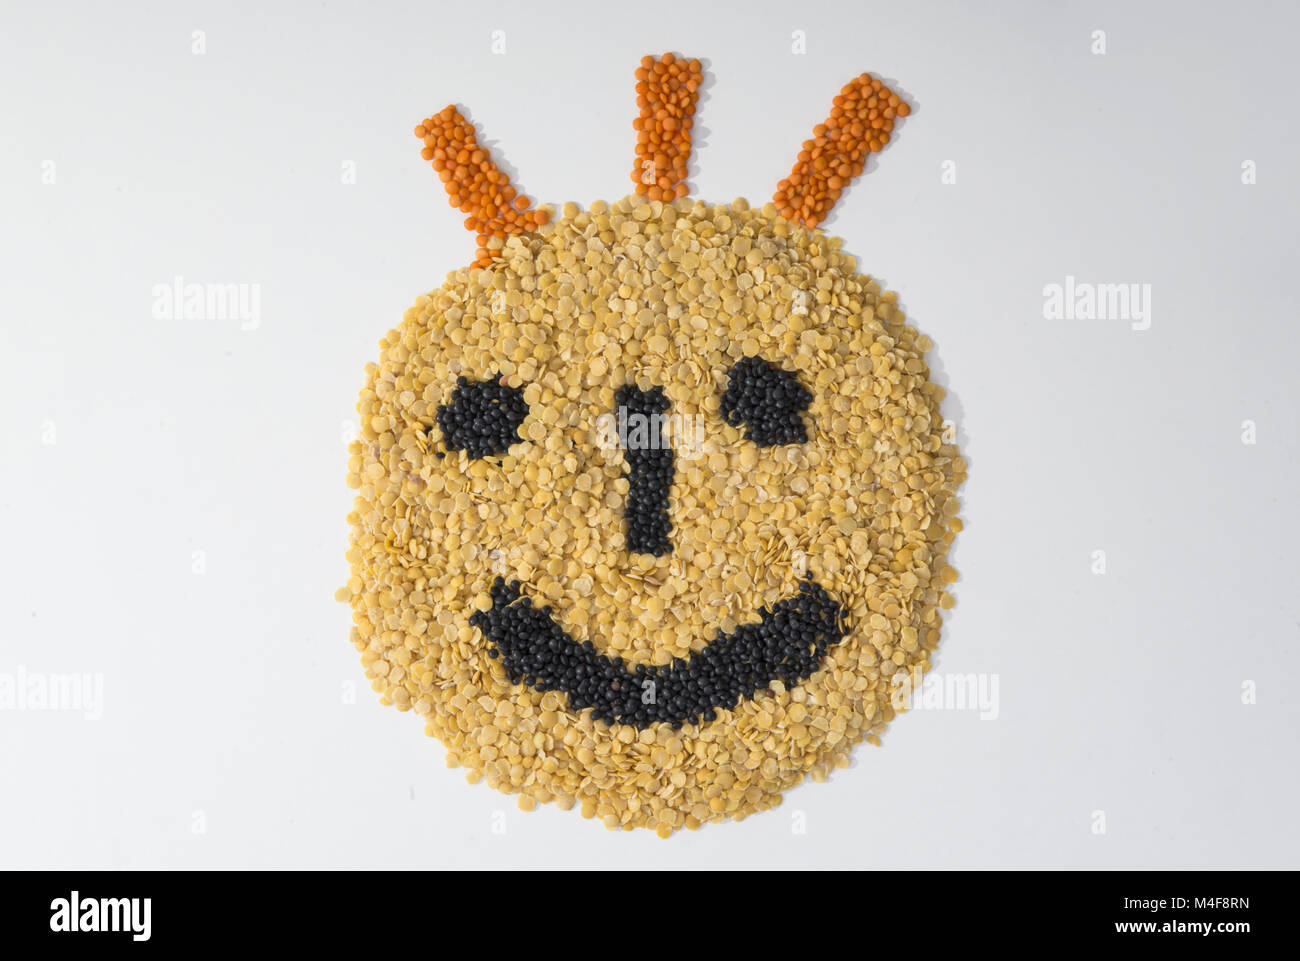 Smiley lentils Stock Photo